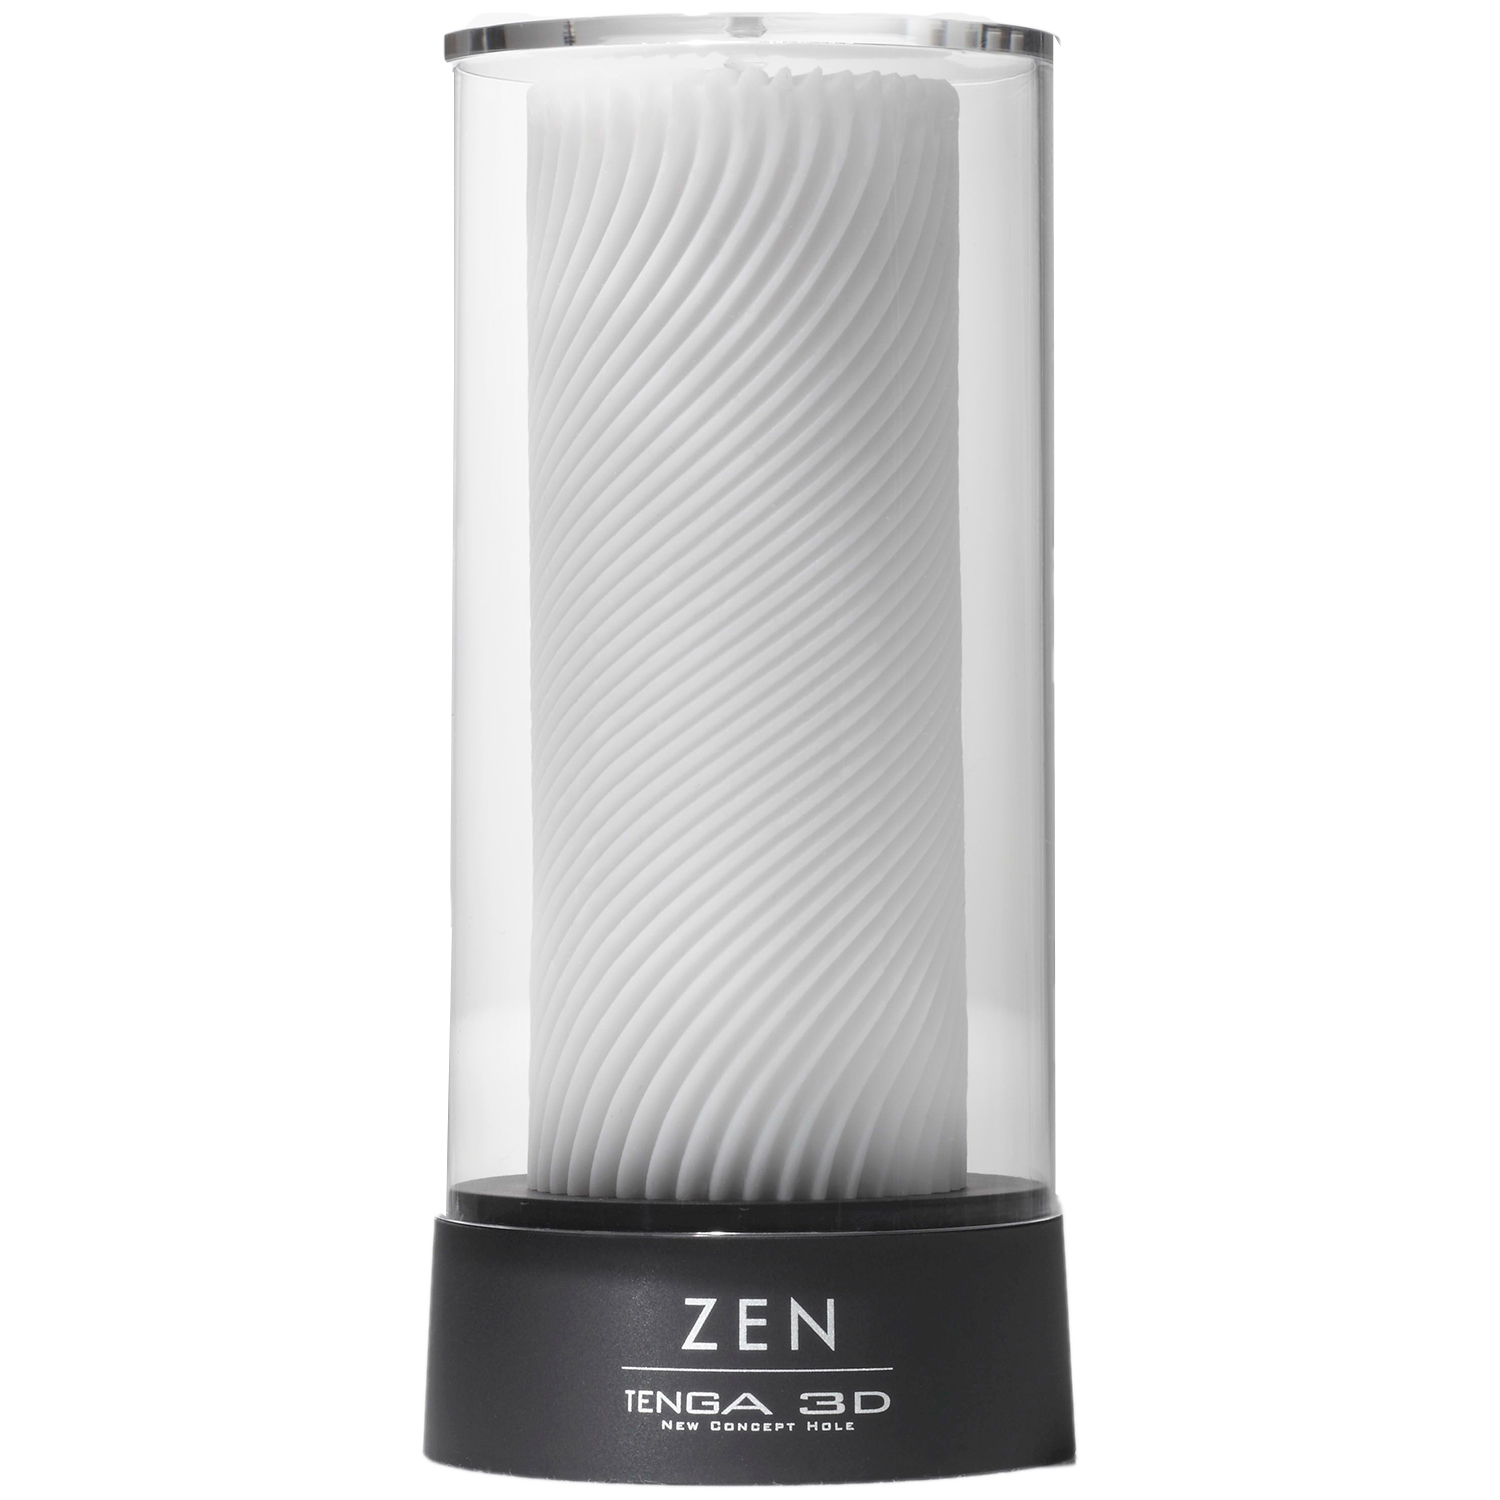 TENGA 3D Zen Onaniprodukt - White